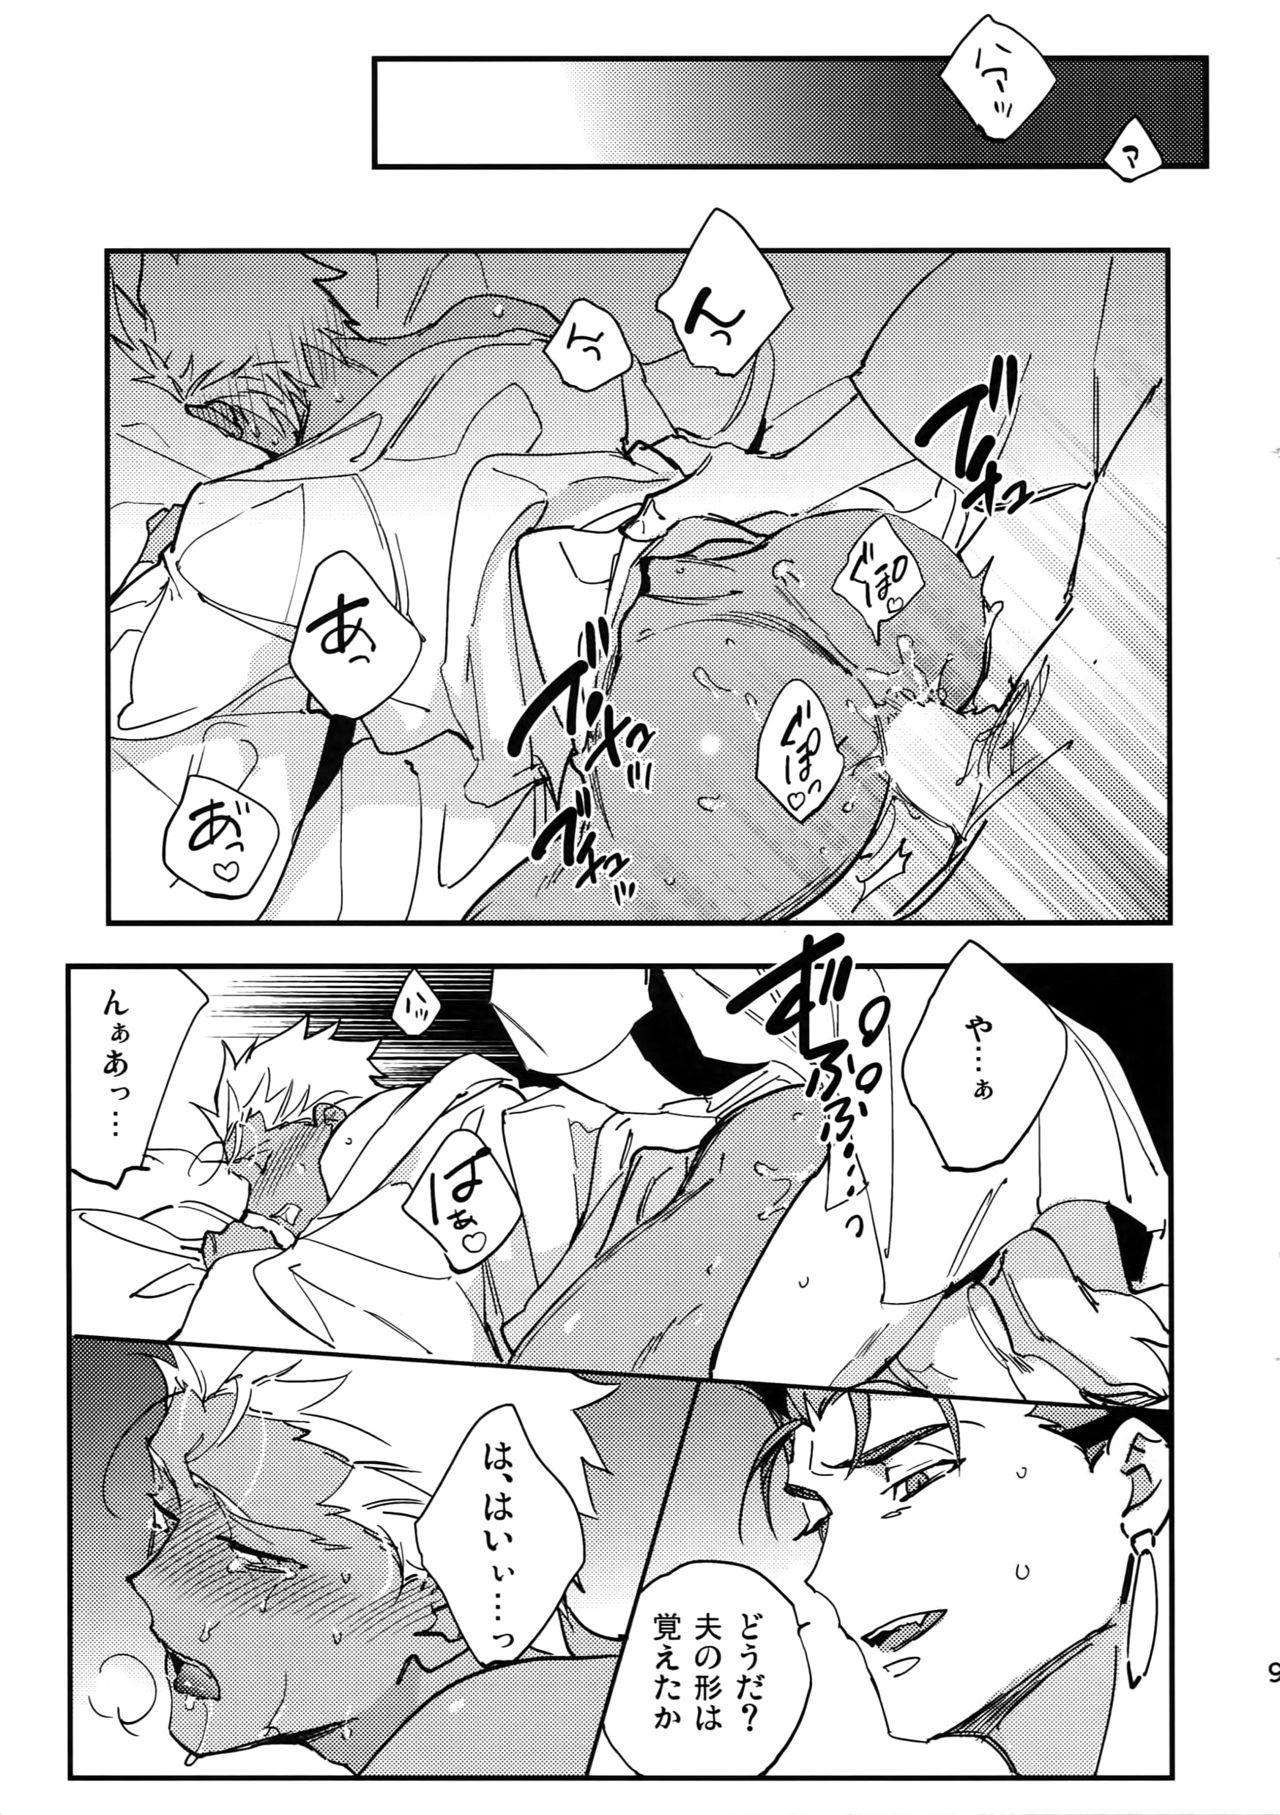 Para Nie no Hanayome - Fate grand order Bang Bros - Page 9